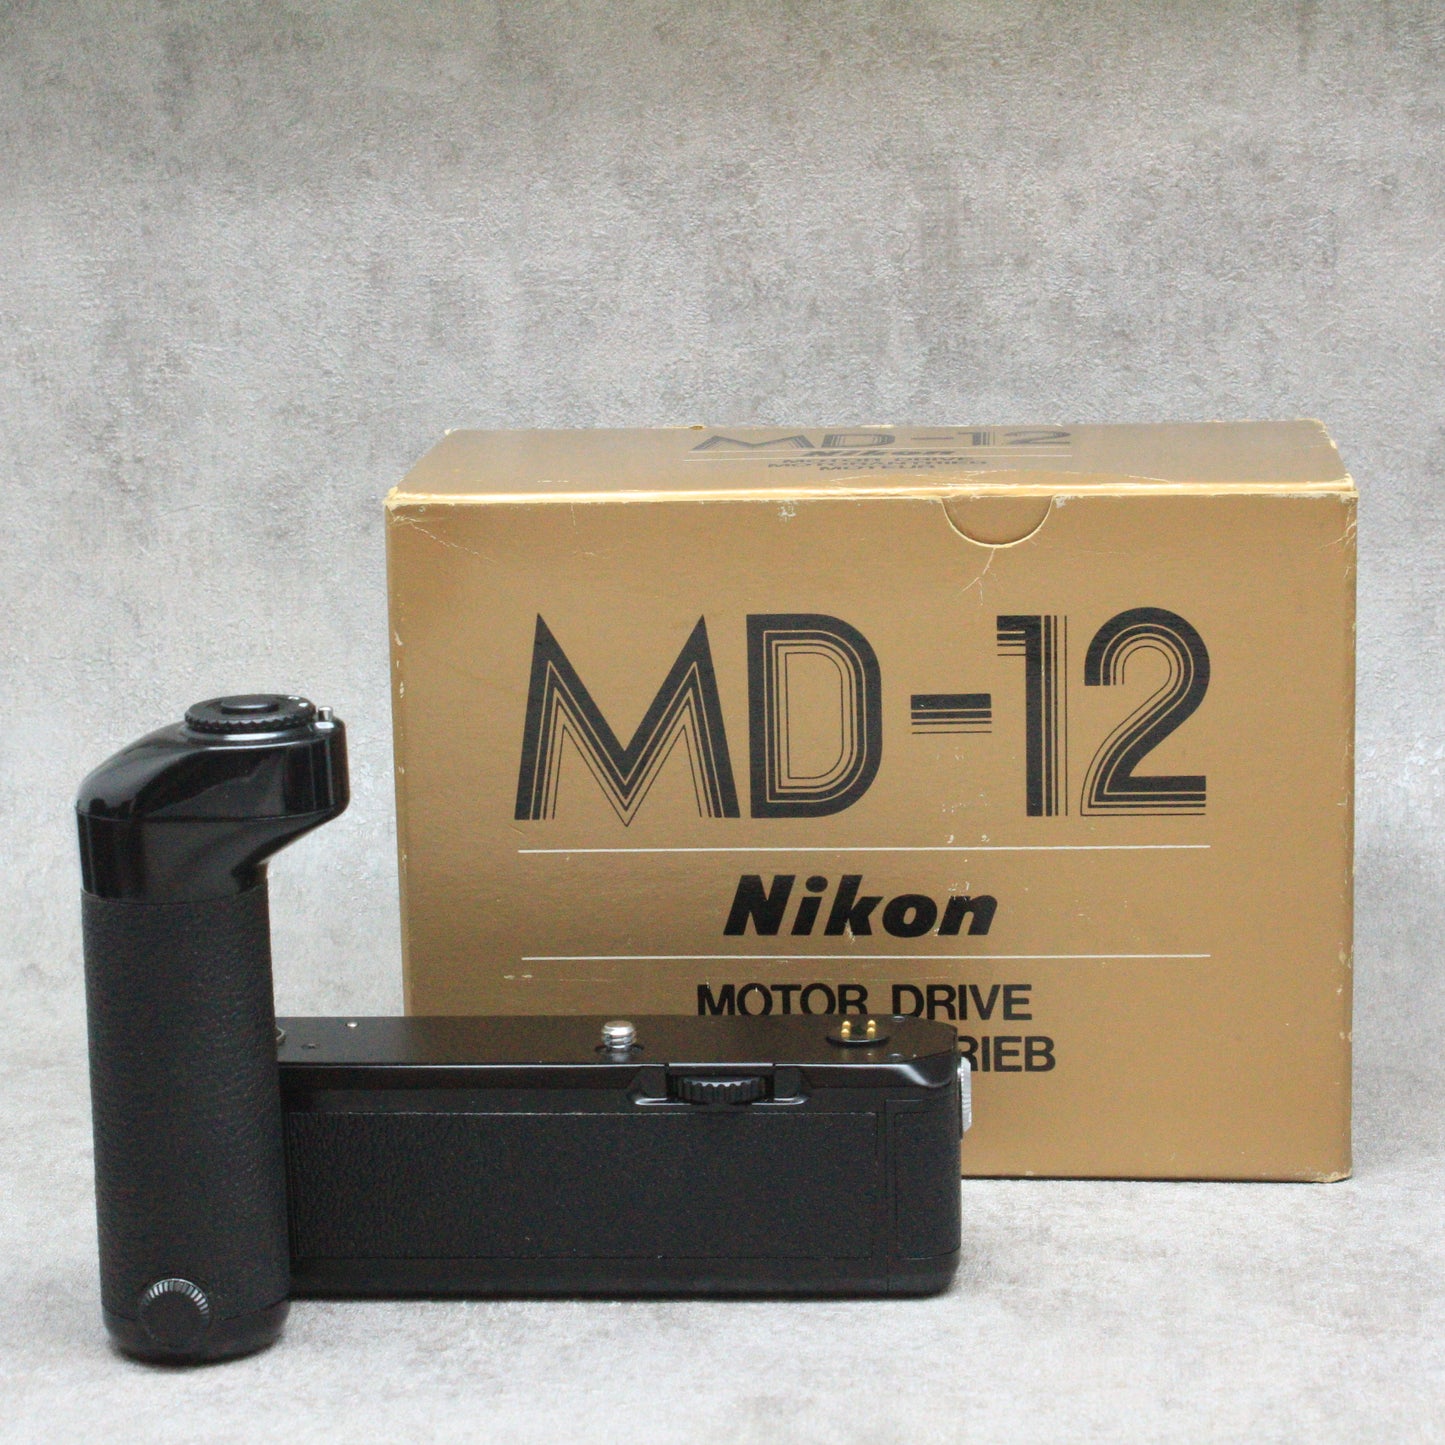 中古品 Nikon MD-12 モータードライブ